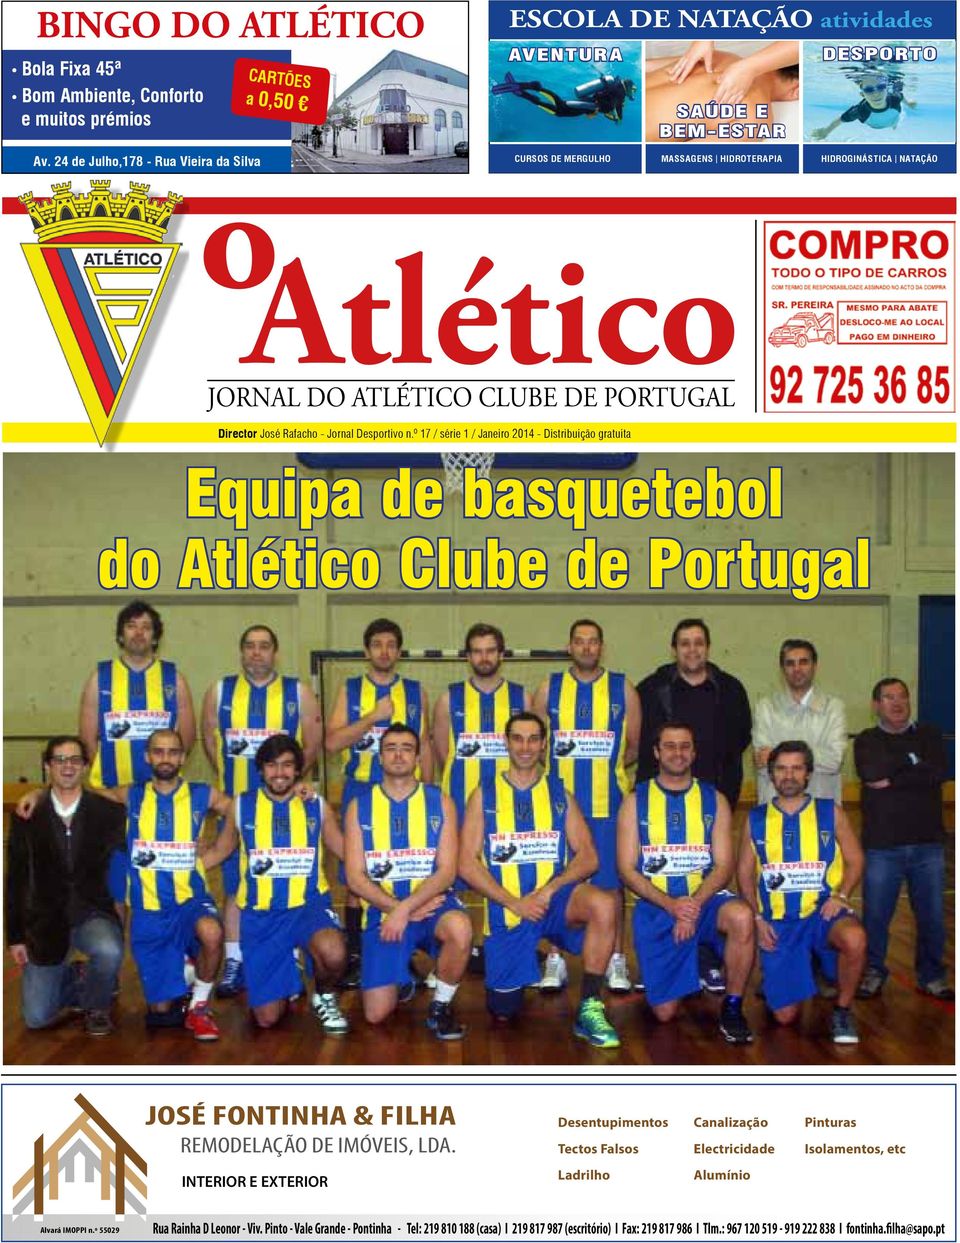 º 17 / série 1 / Janeiro 2014 - Distribuição gratuita Equipa de basquetebol do Atlético Clube de Portugal JOSÉ FONTINHA & FILHA REMODELAÇÃO DE IMÓVEIS, LDA.